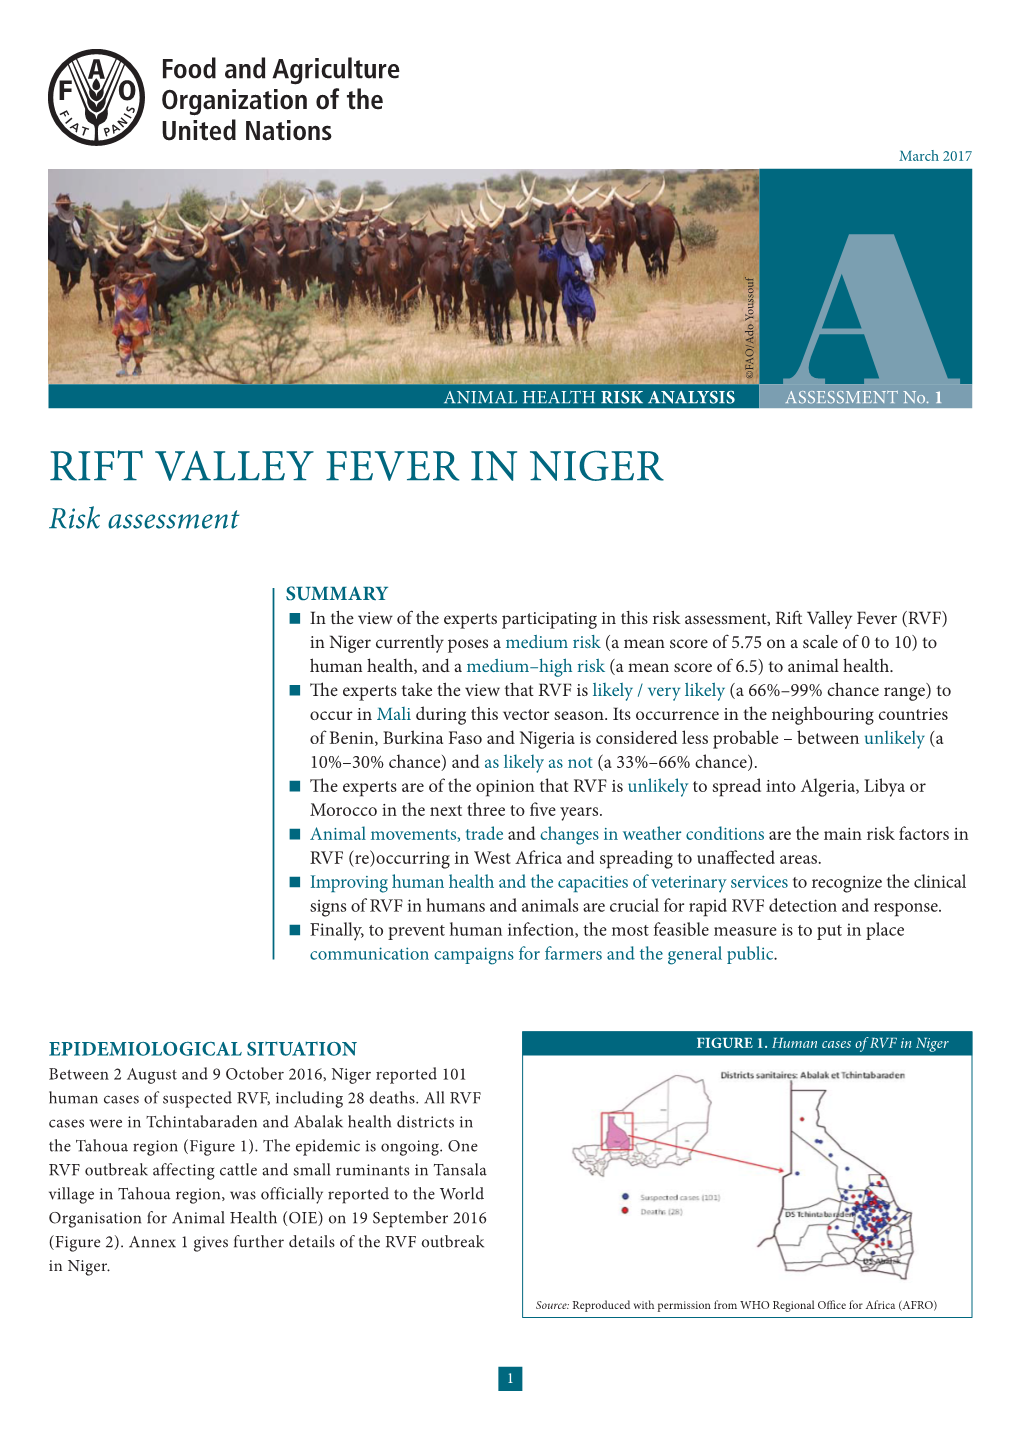 RIFT VALLEY FEVER in NIGER Risk Assessment